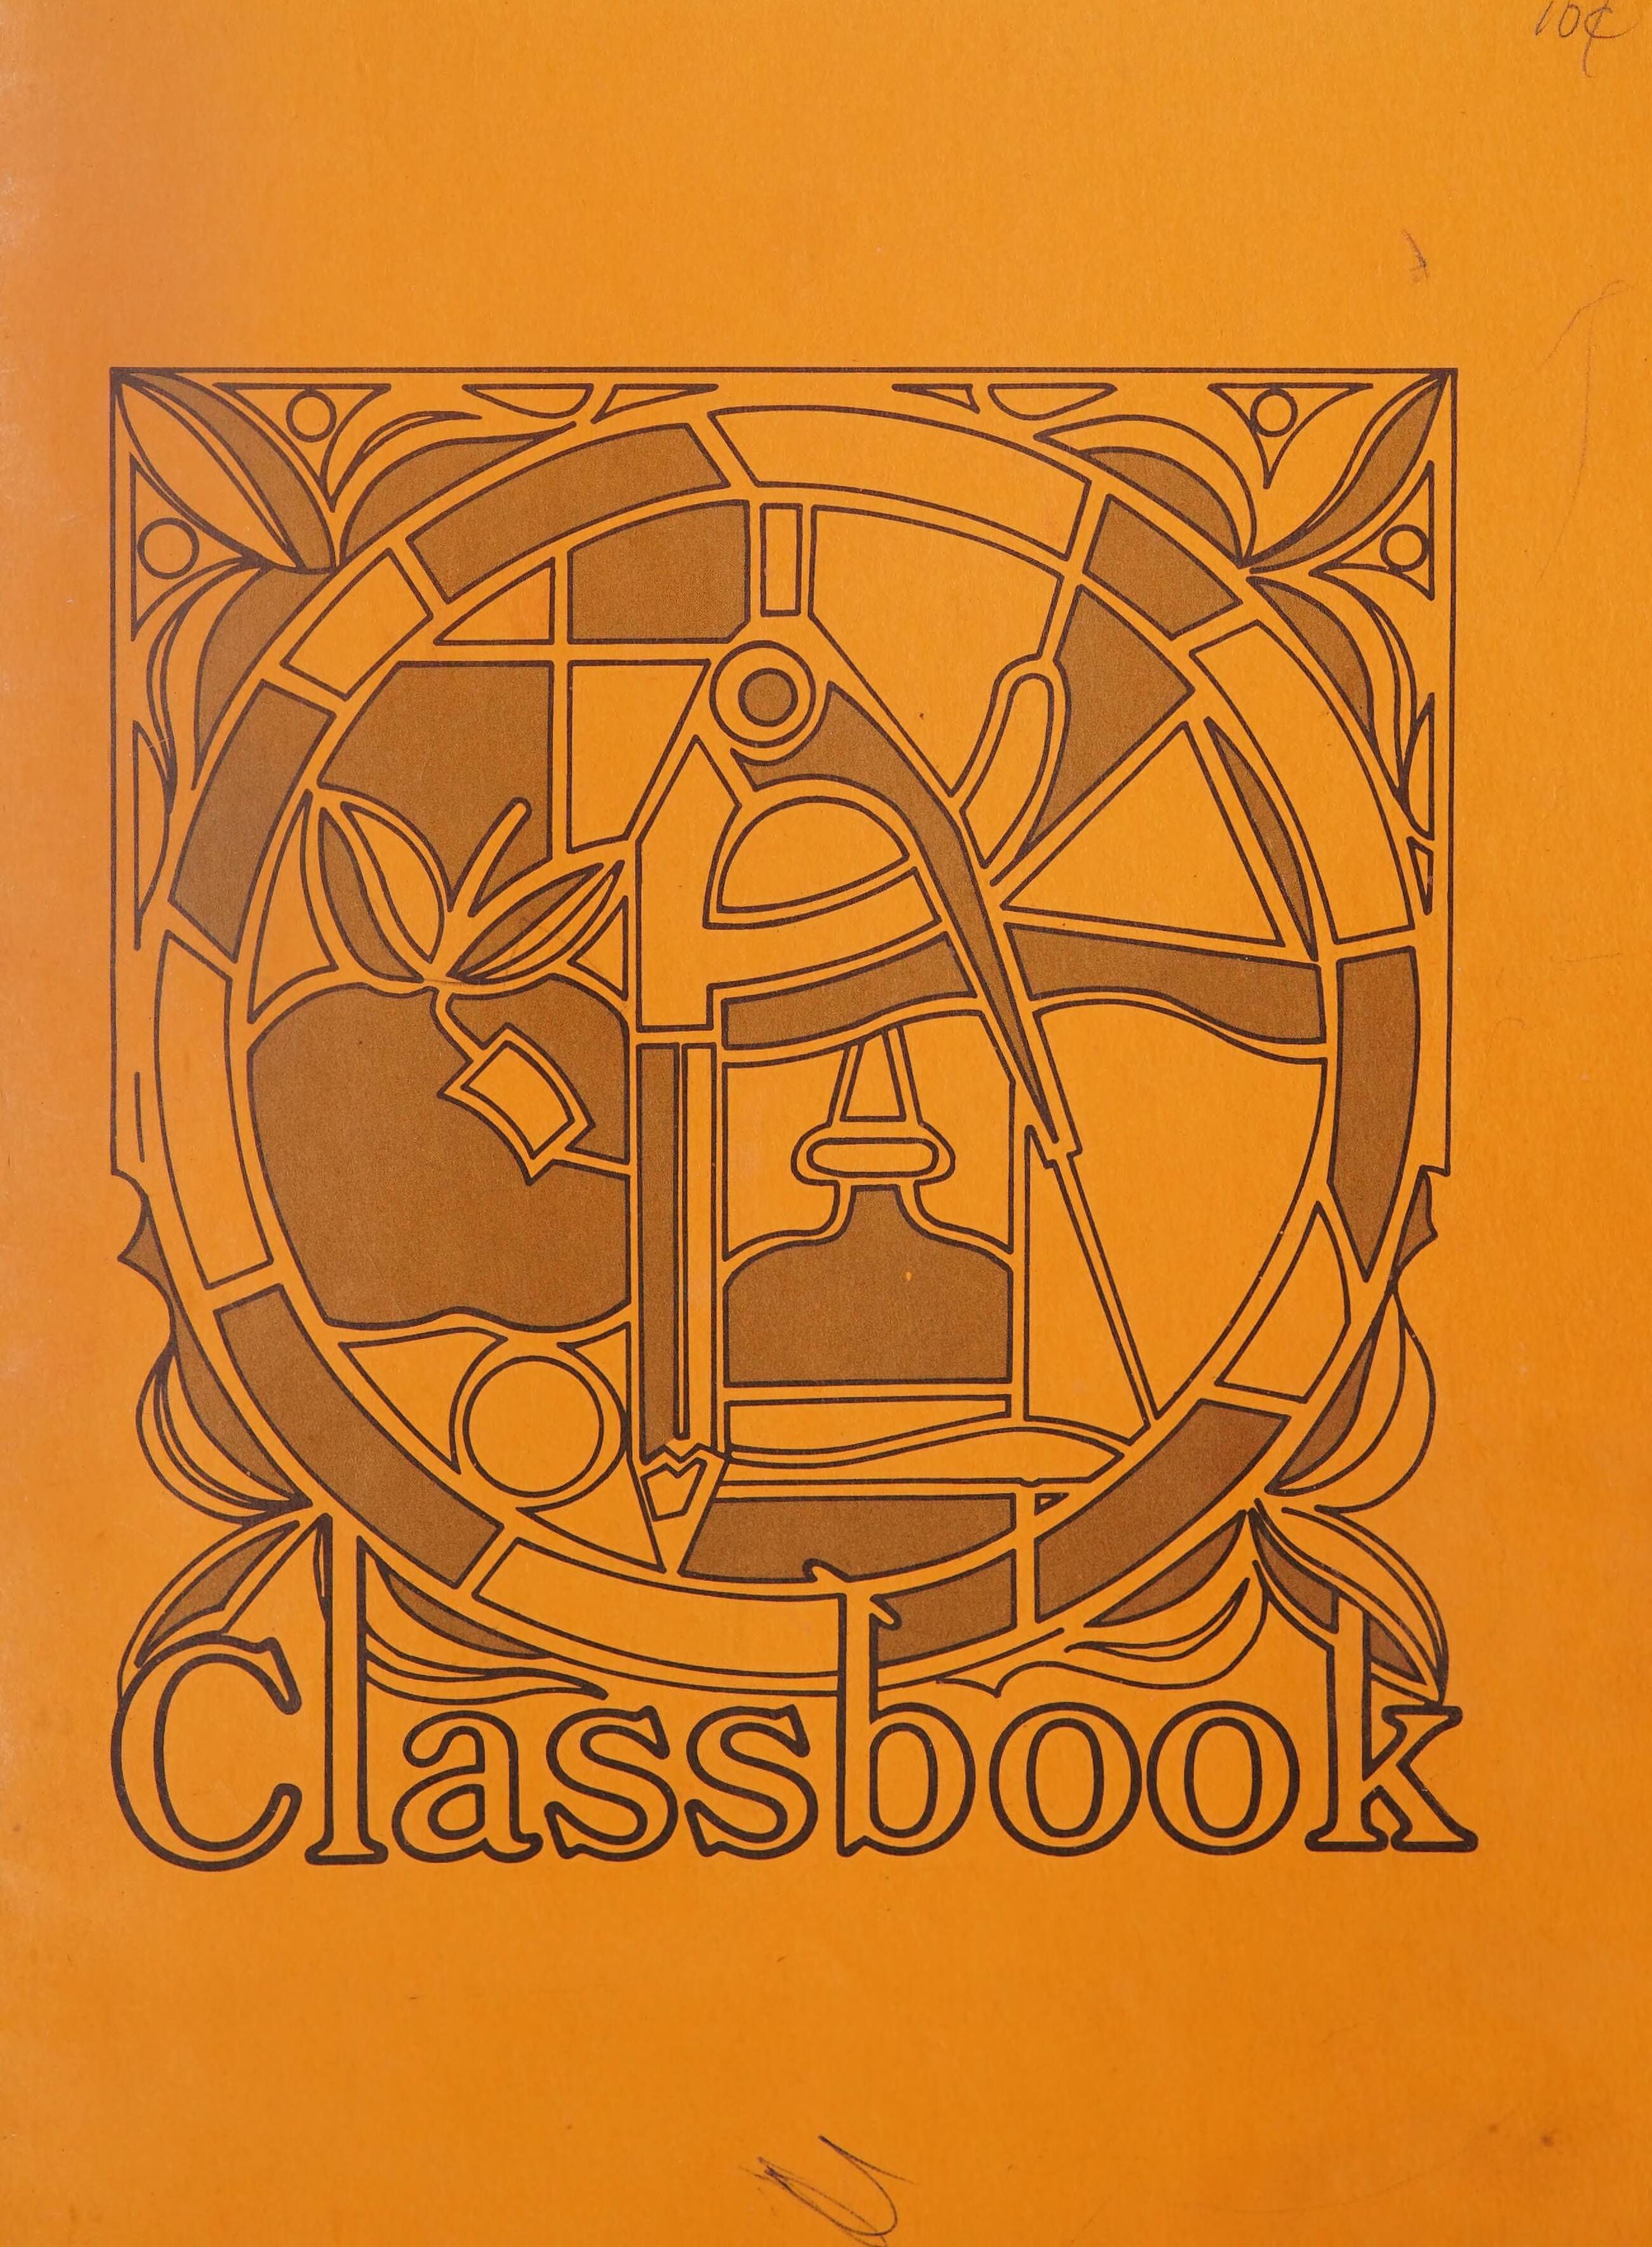 Ferndale Junior High School Classbook [1975]